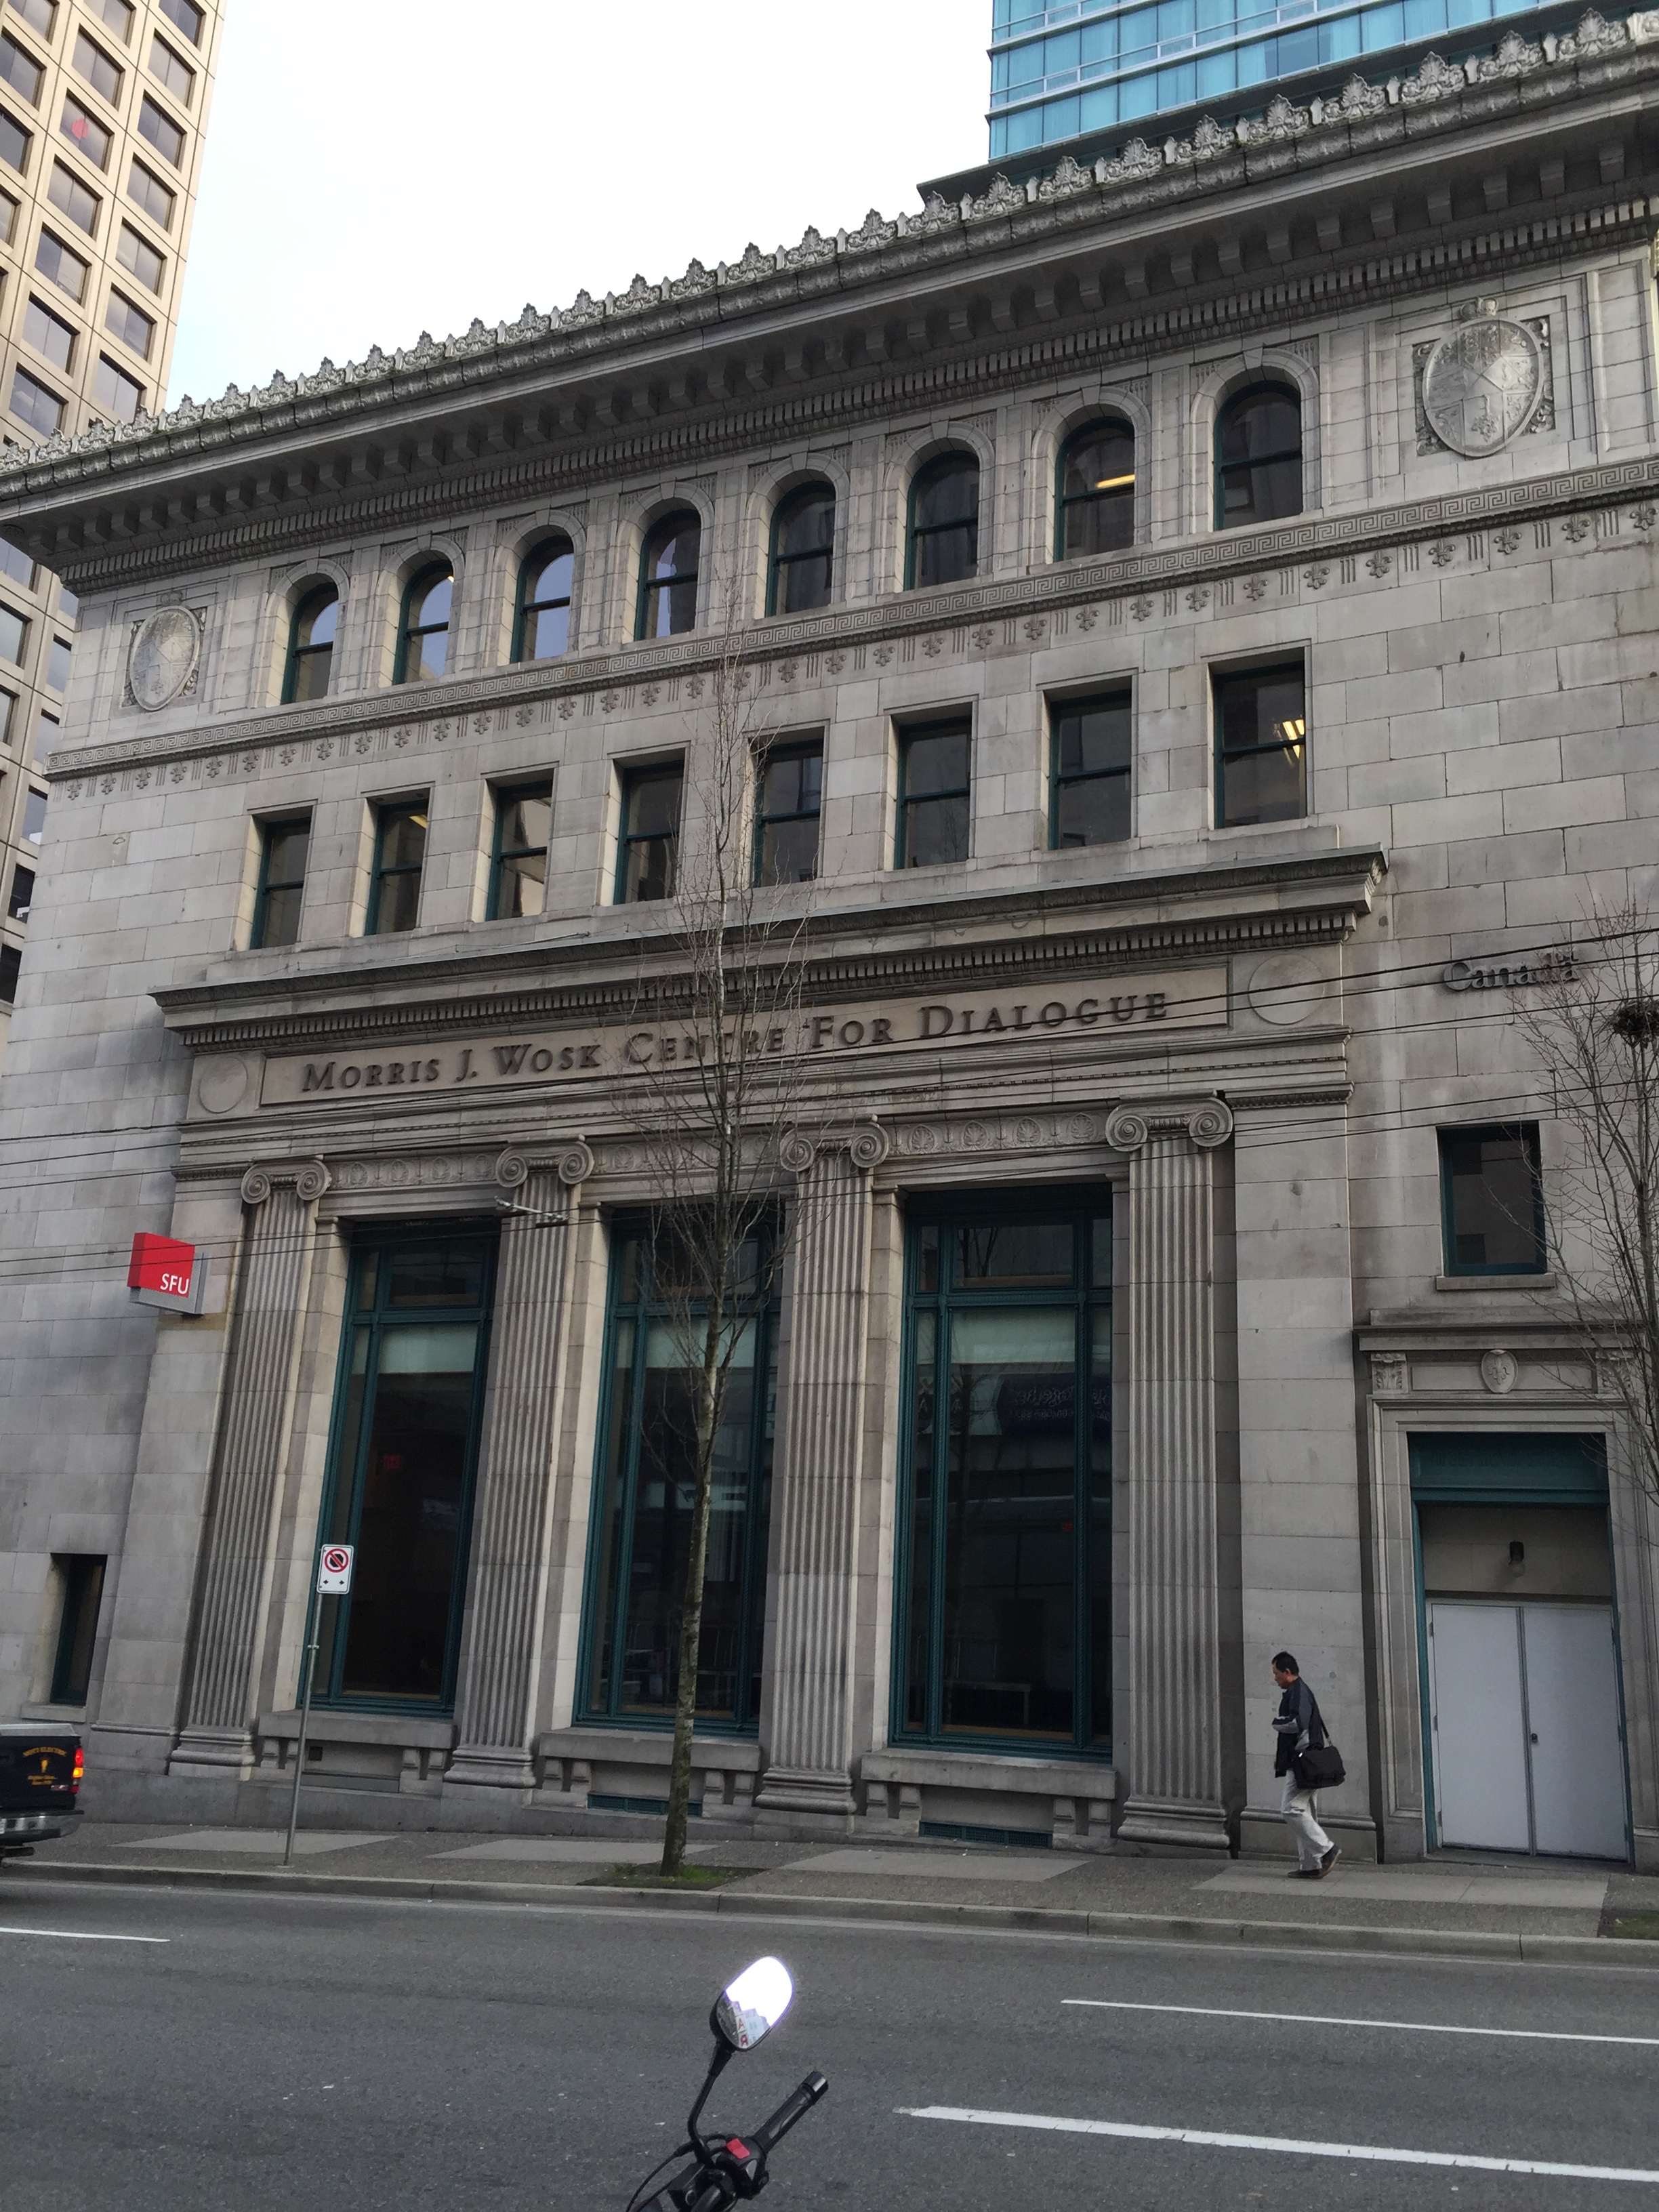 Union Bank building - 1919/20